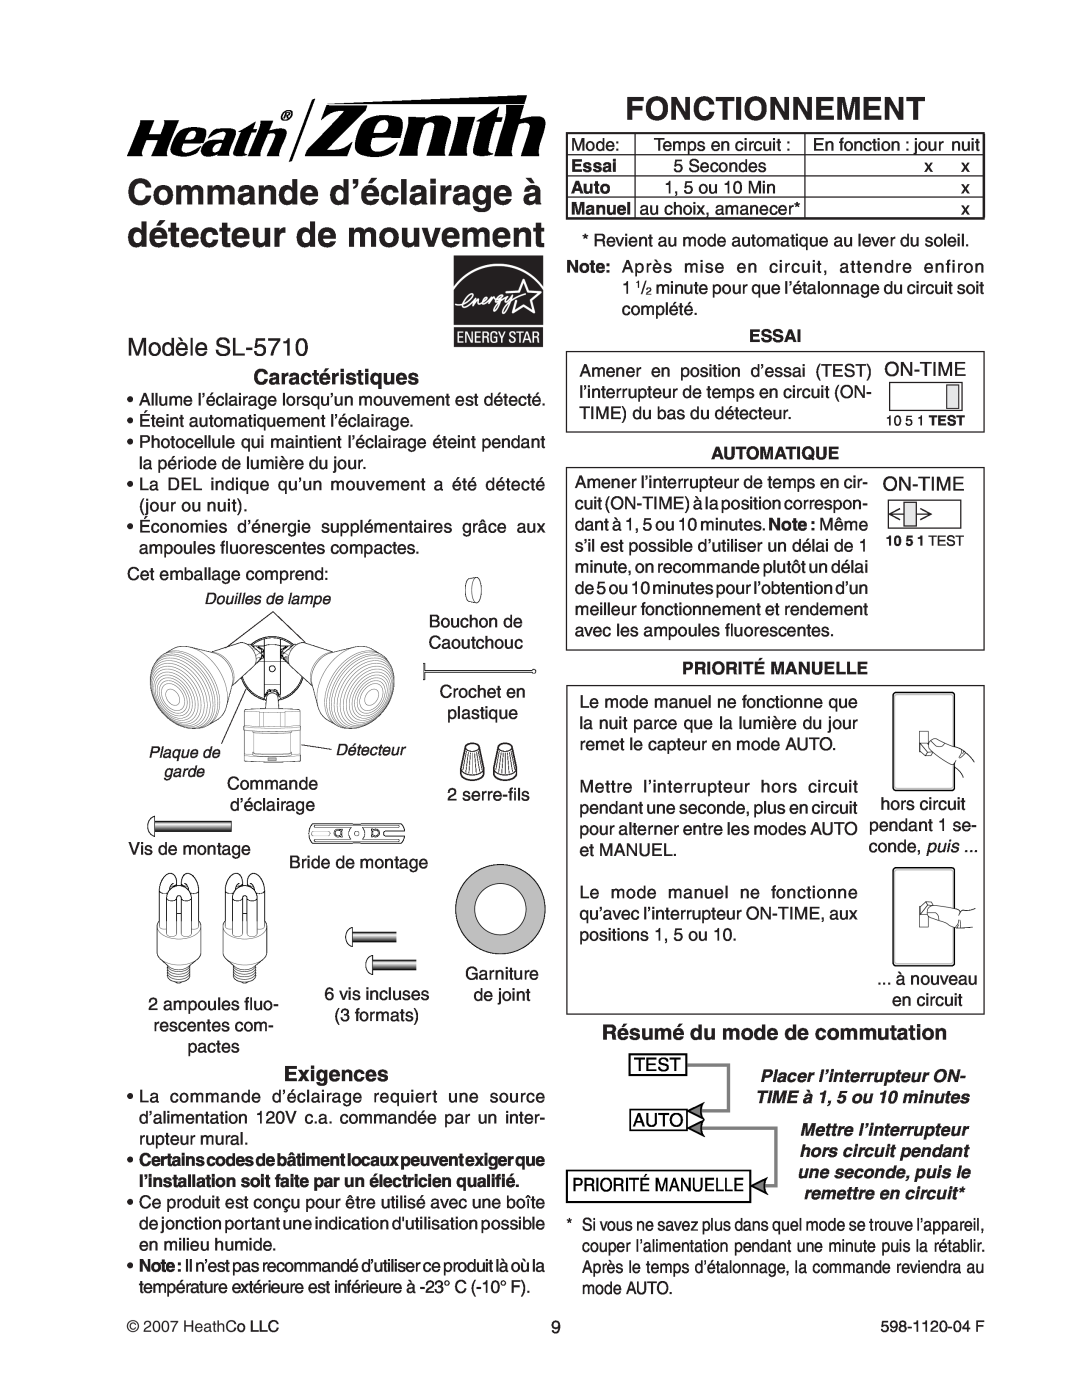 Heath Zenith manual Commande d’éclairage à détecteur de mouvement, Fonctionnement, Modèle SL-5710, On-Time, Test, Auto 